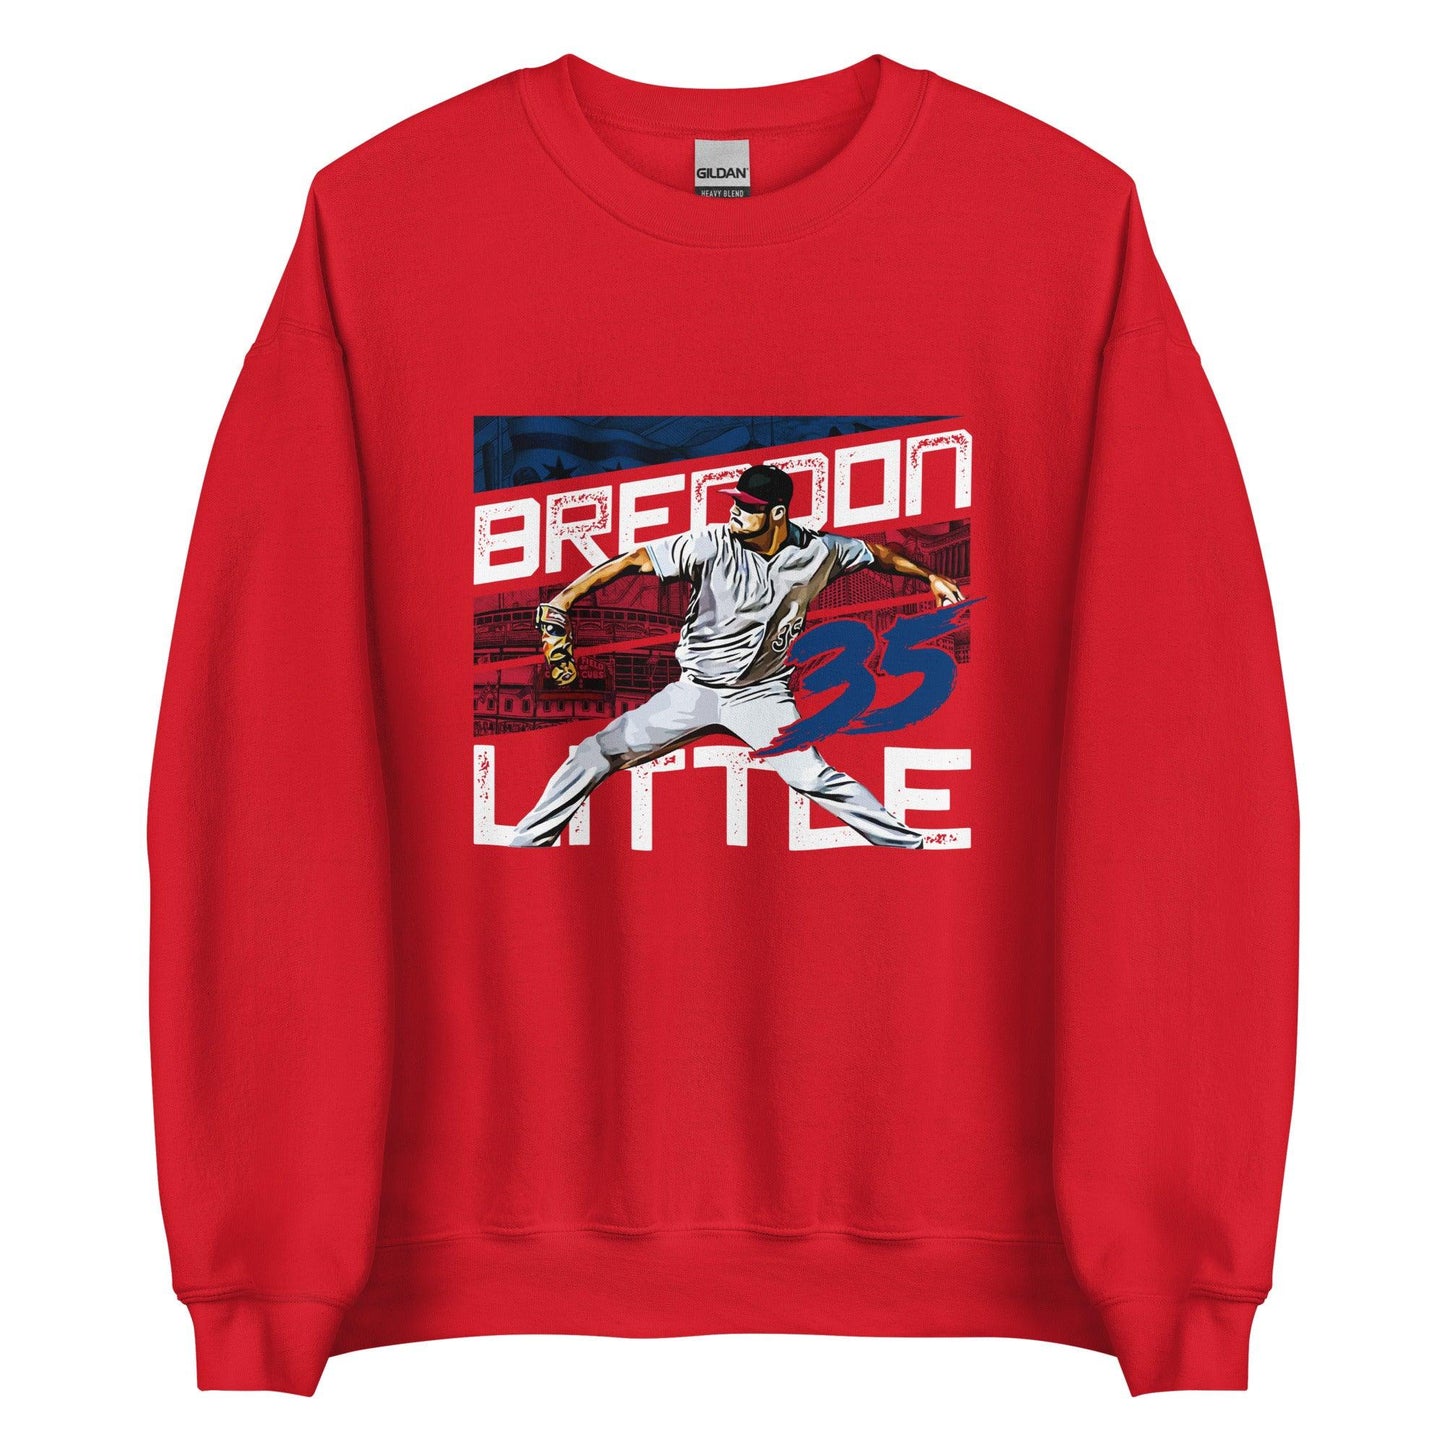 Brendon Little "35" Sweatshirt - Fan Arch